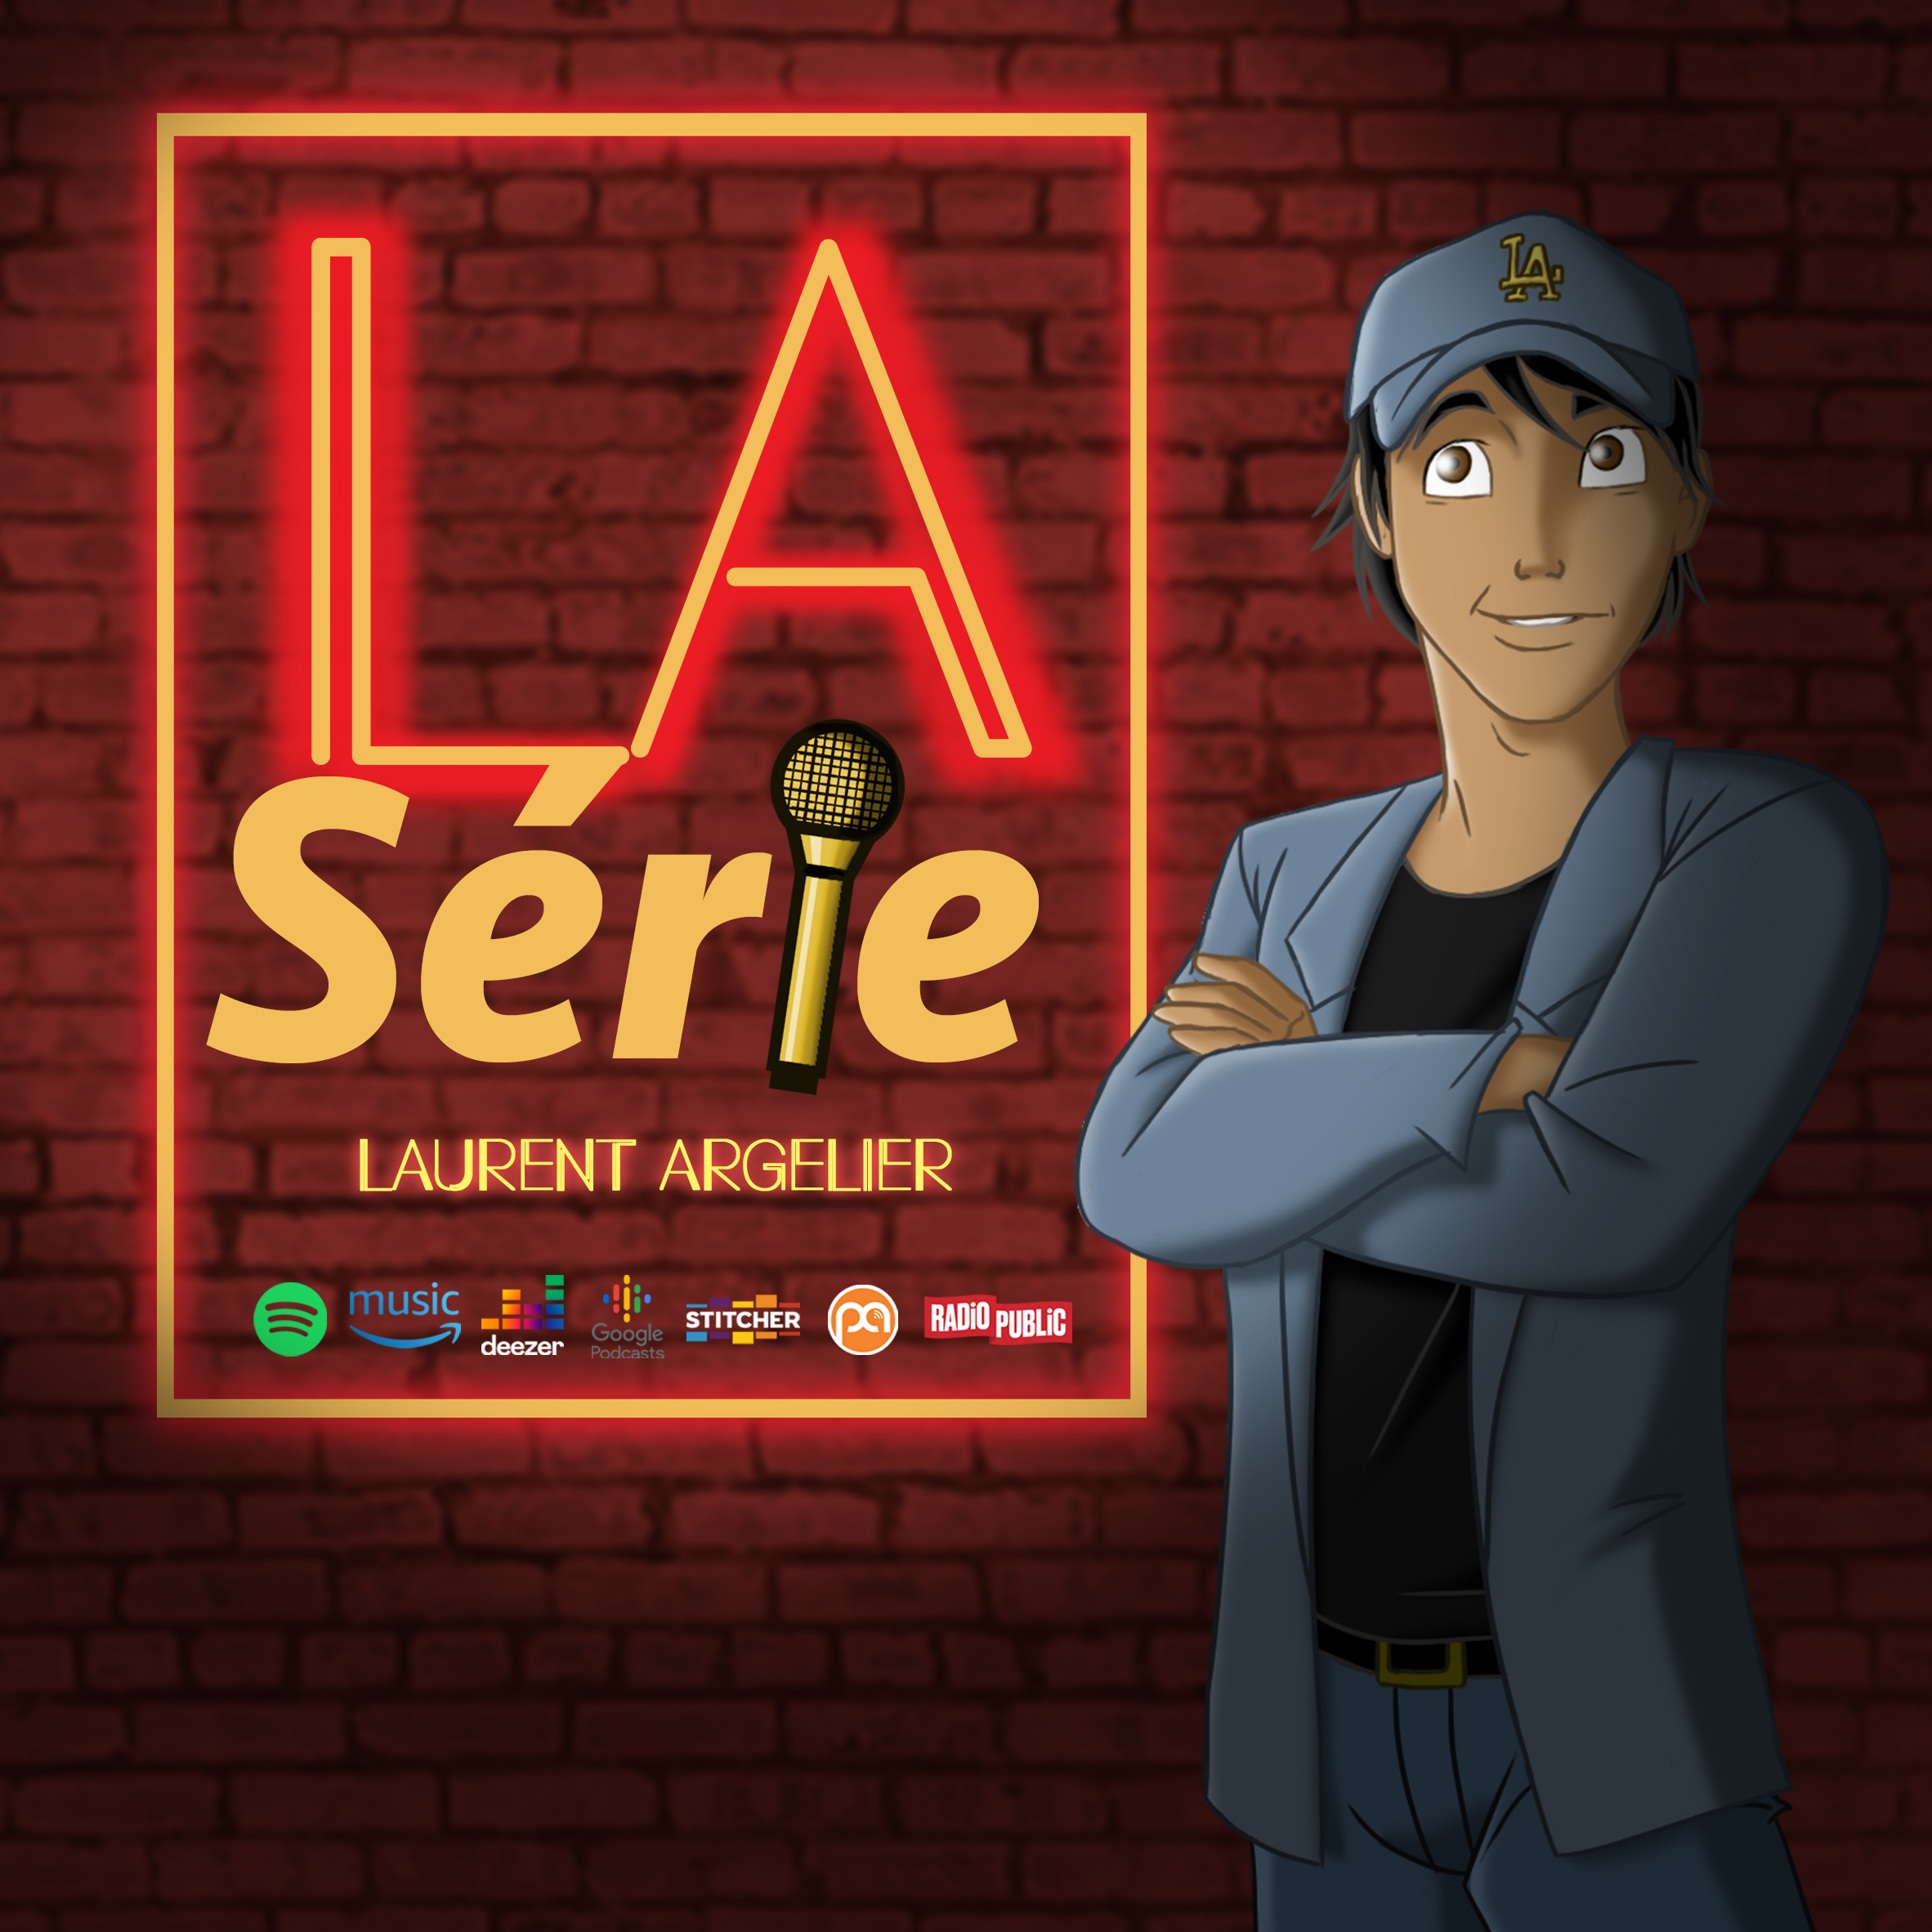 LA-Serie-de-Laurent-Argelier-1.jpg